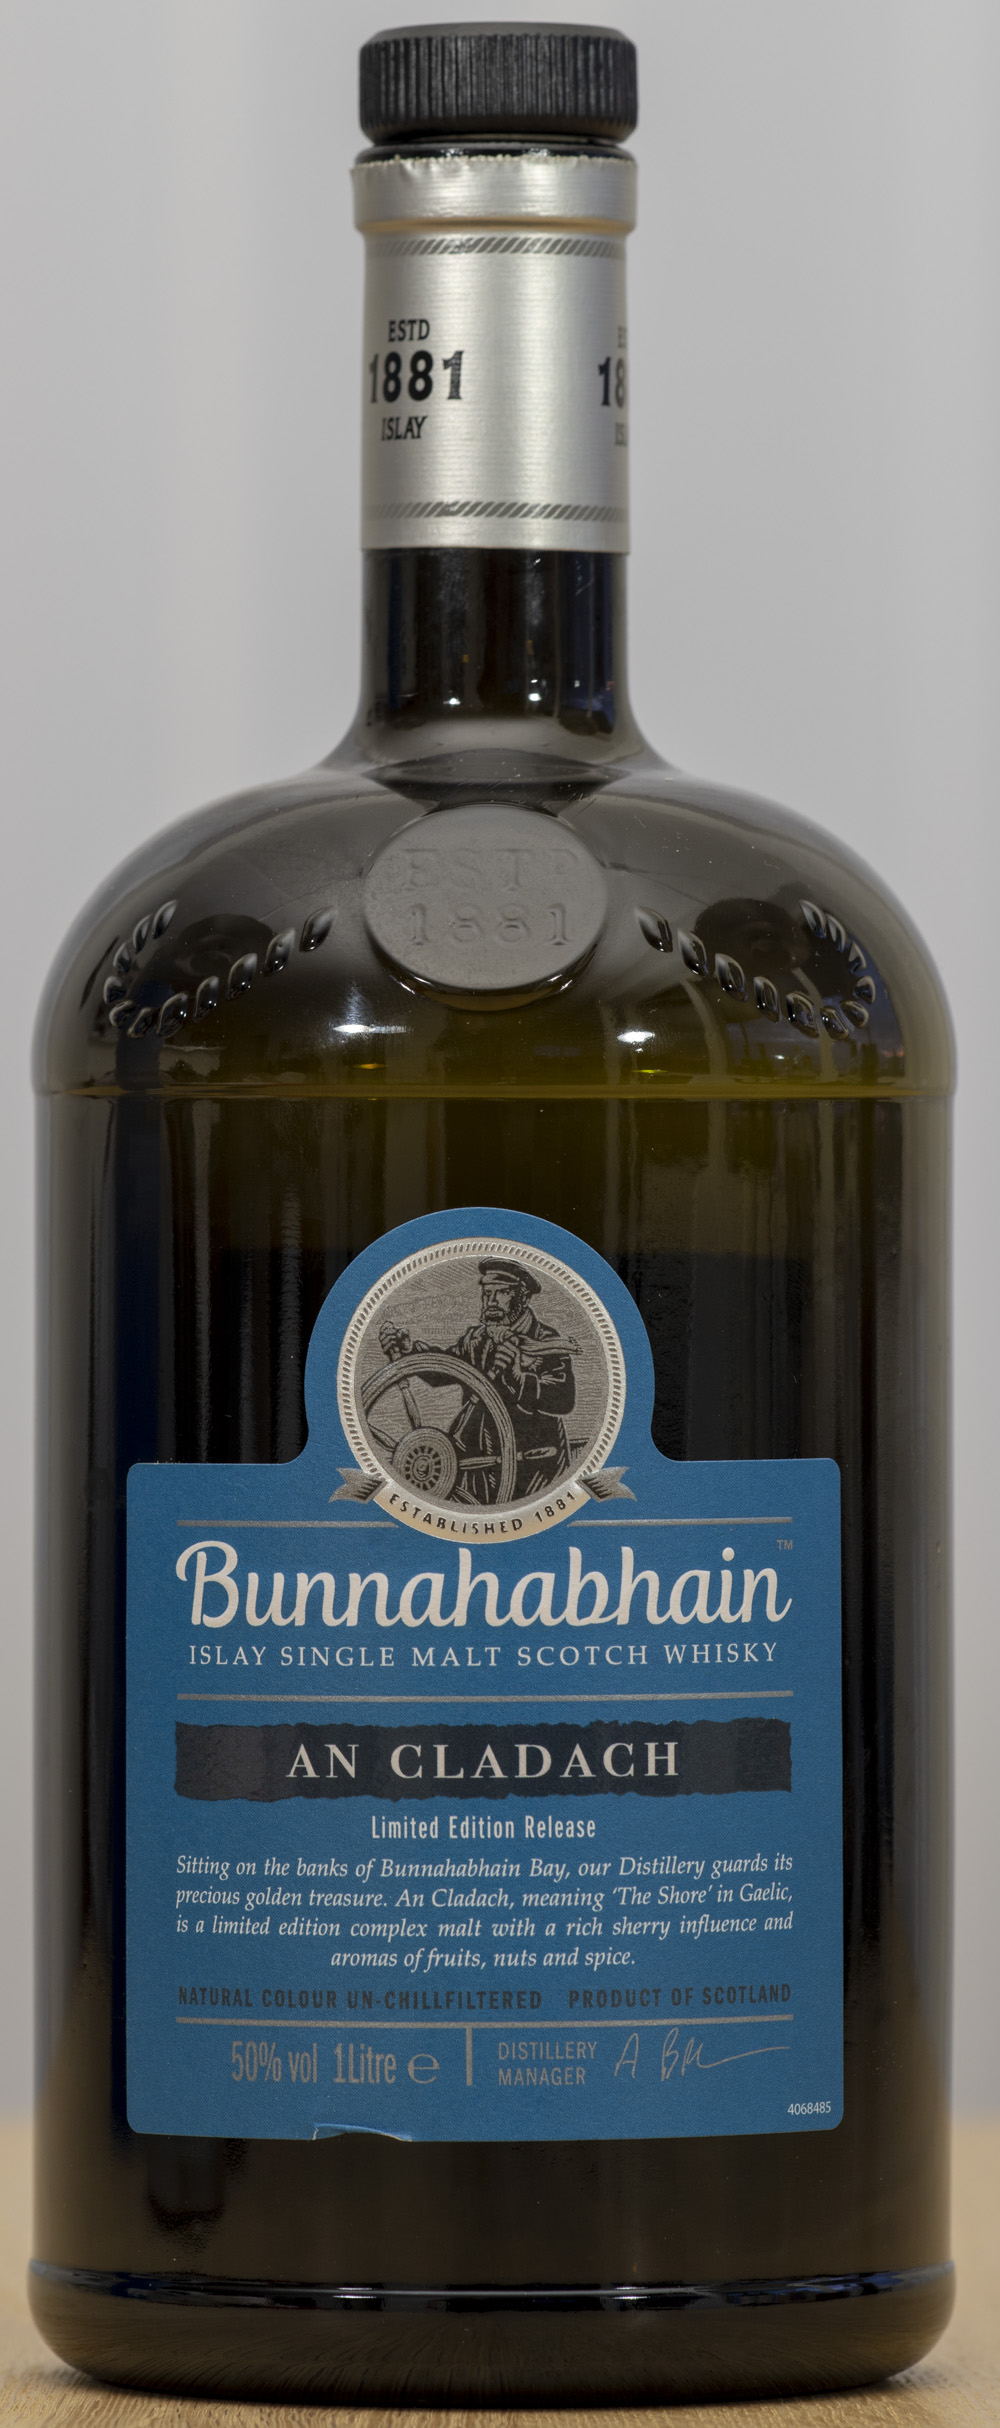 Billede: PHC_1538 - Bunnahabhain An Cladach - bottle front.jpg